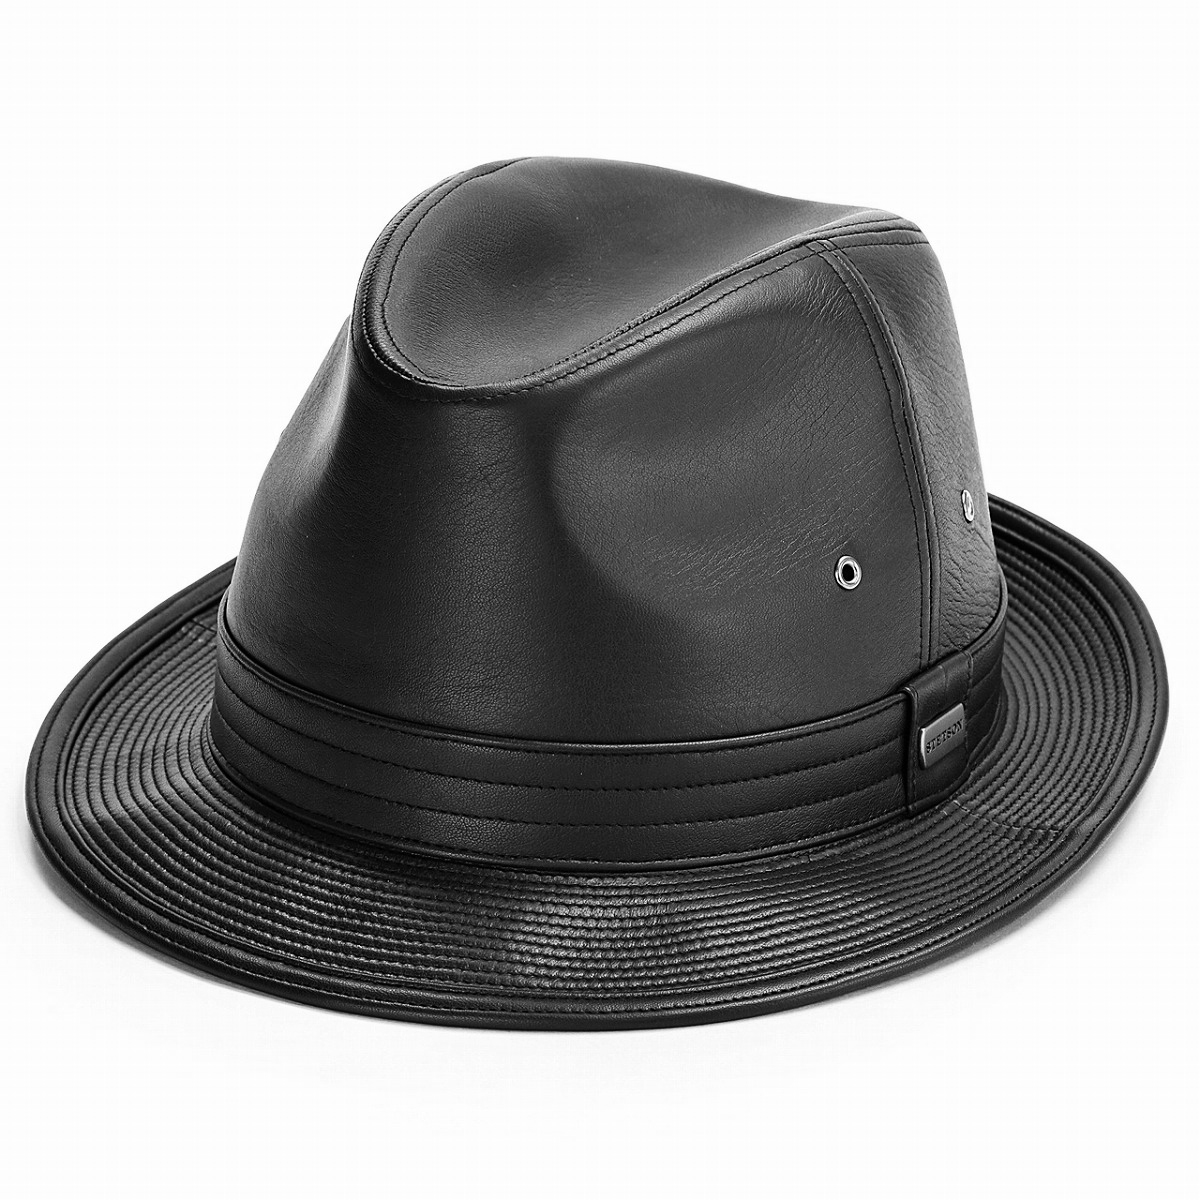 【楽天市場】STETSON 帽子 ゴートスキン 中折れハット BL型 サイズ調整可 ハット ヤギ革 ロイヤルステットソン 送料無料 帽子